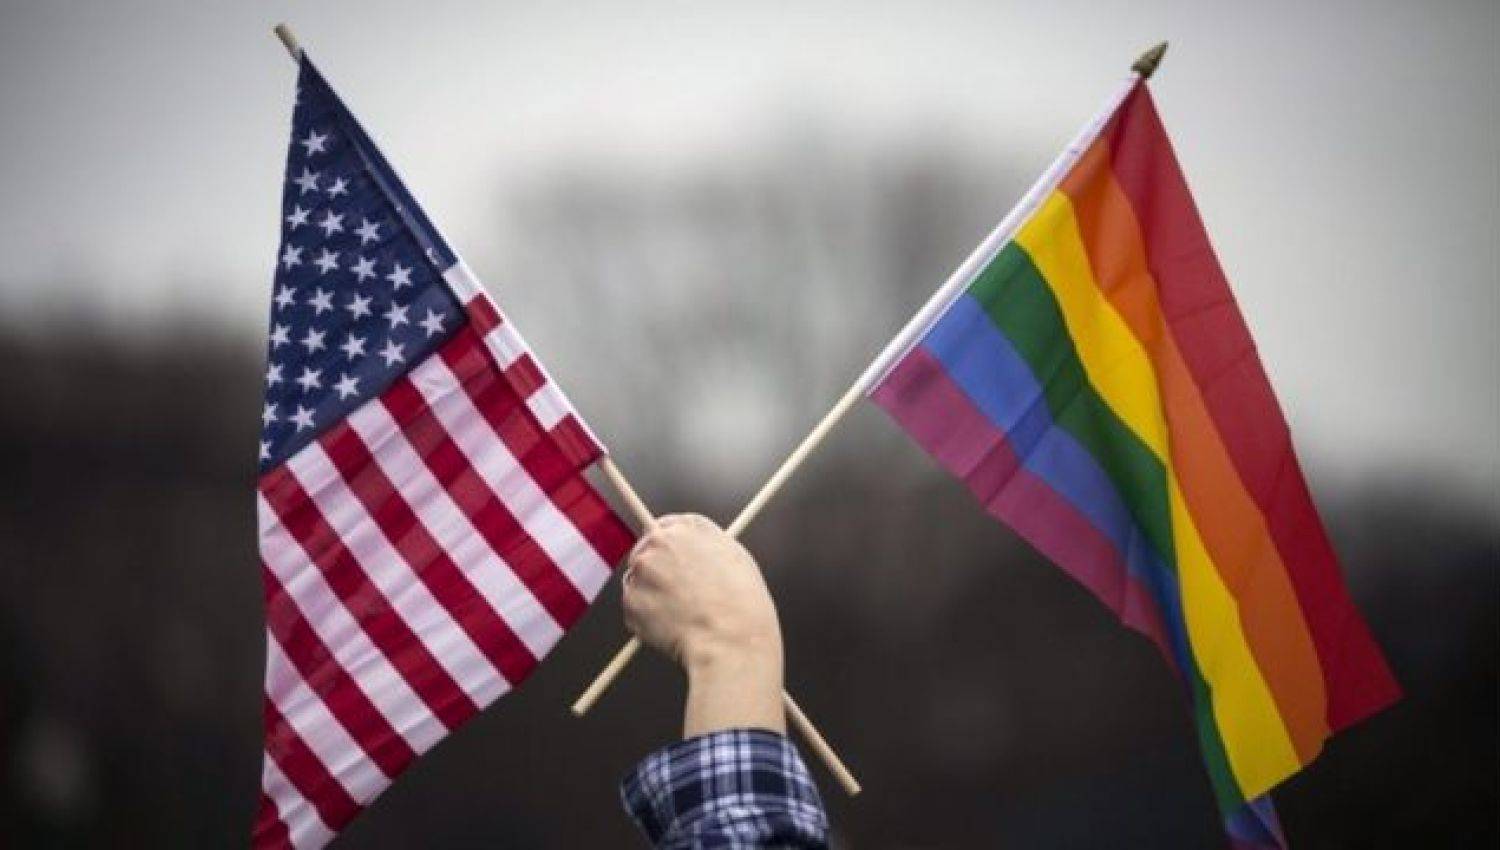 הומוסקסואליות היא פרויקט פוליטי אמריקאי